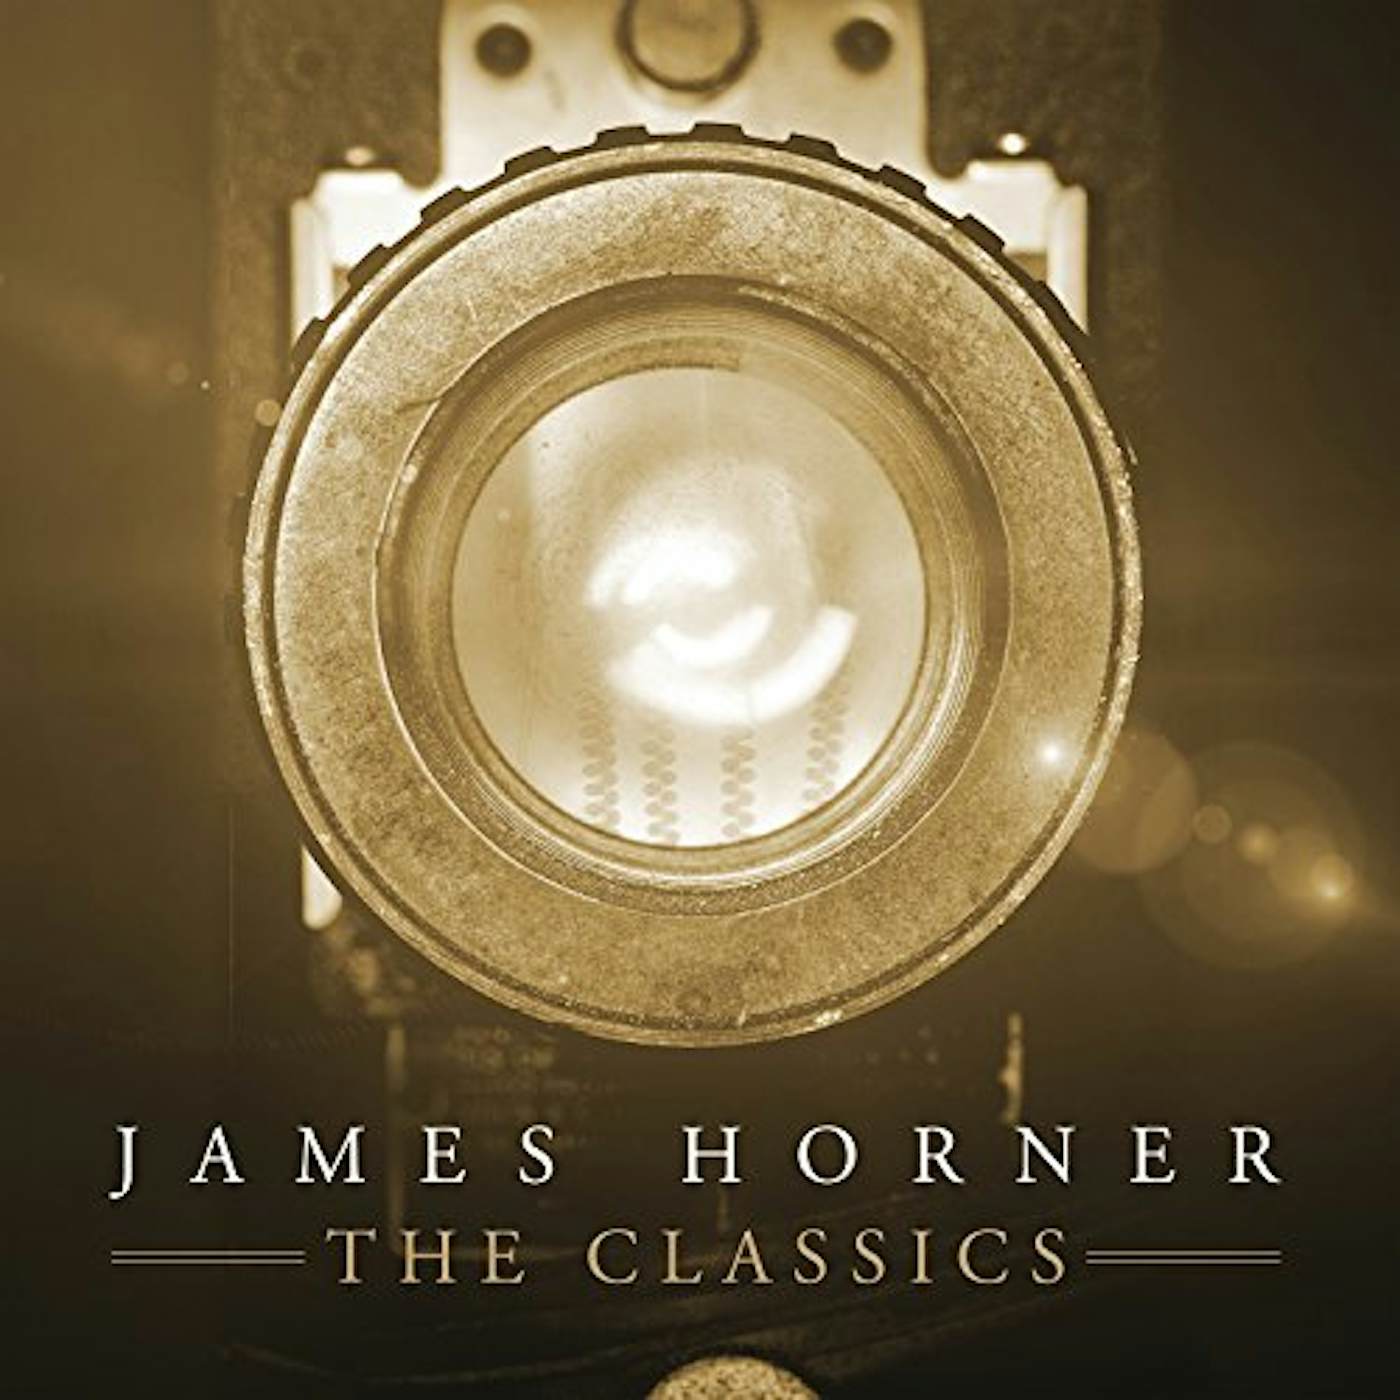 James Horner - The Classics Vinyl Record